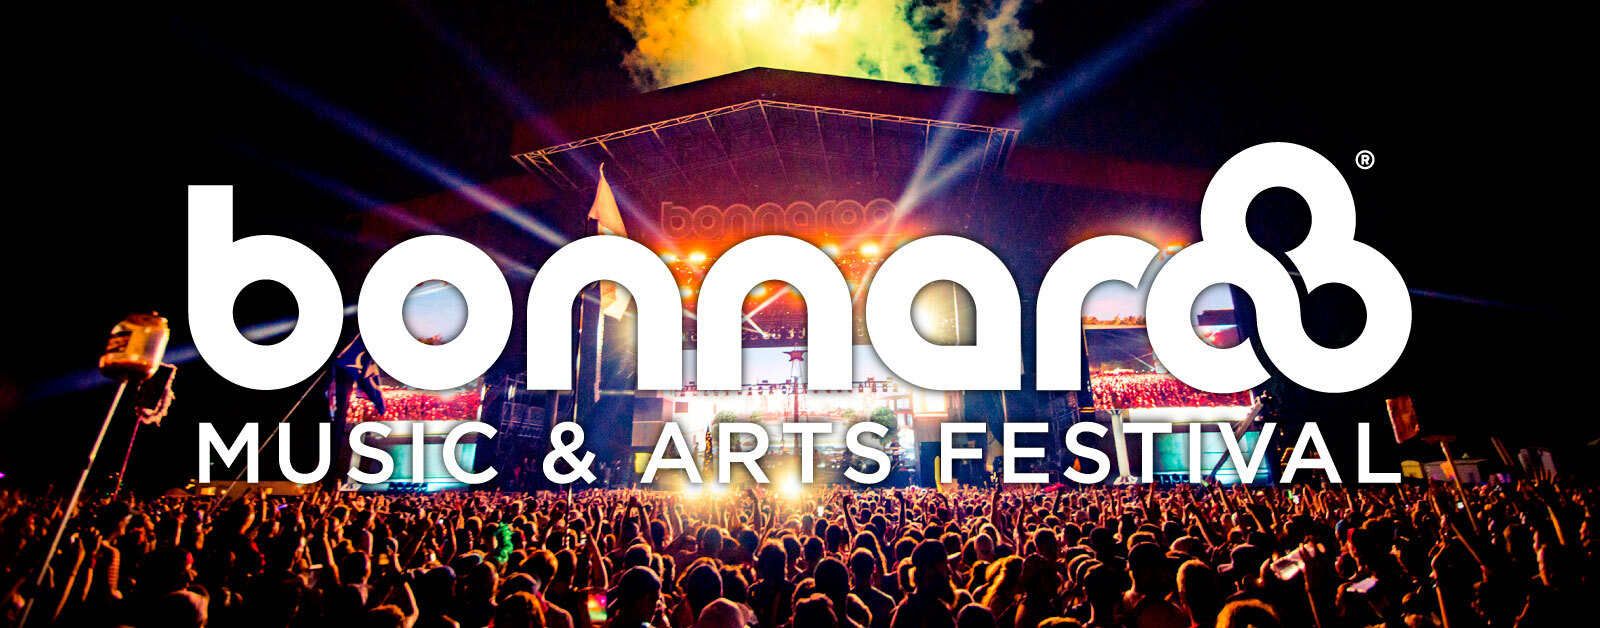 Bonnaroo Music Arts Festival Unveils 21 Lineup Live Nation Entertainment